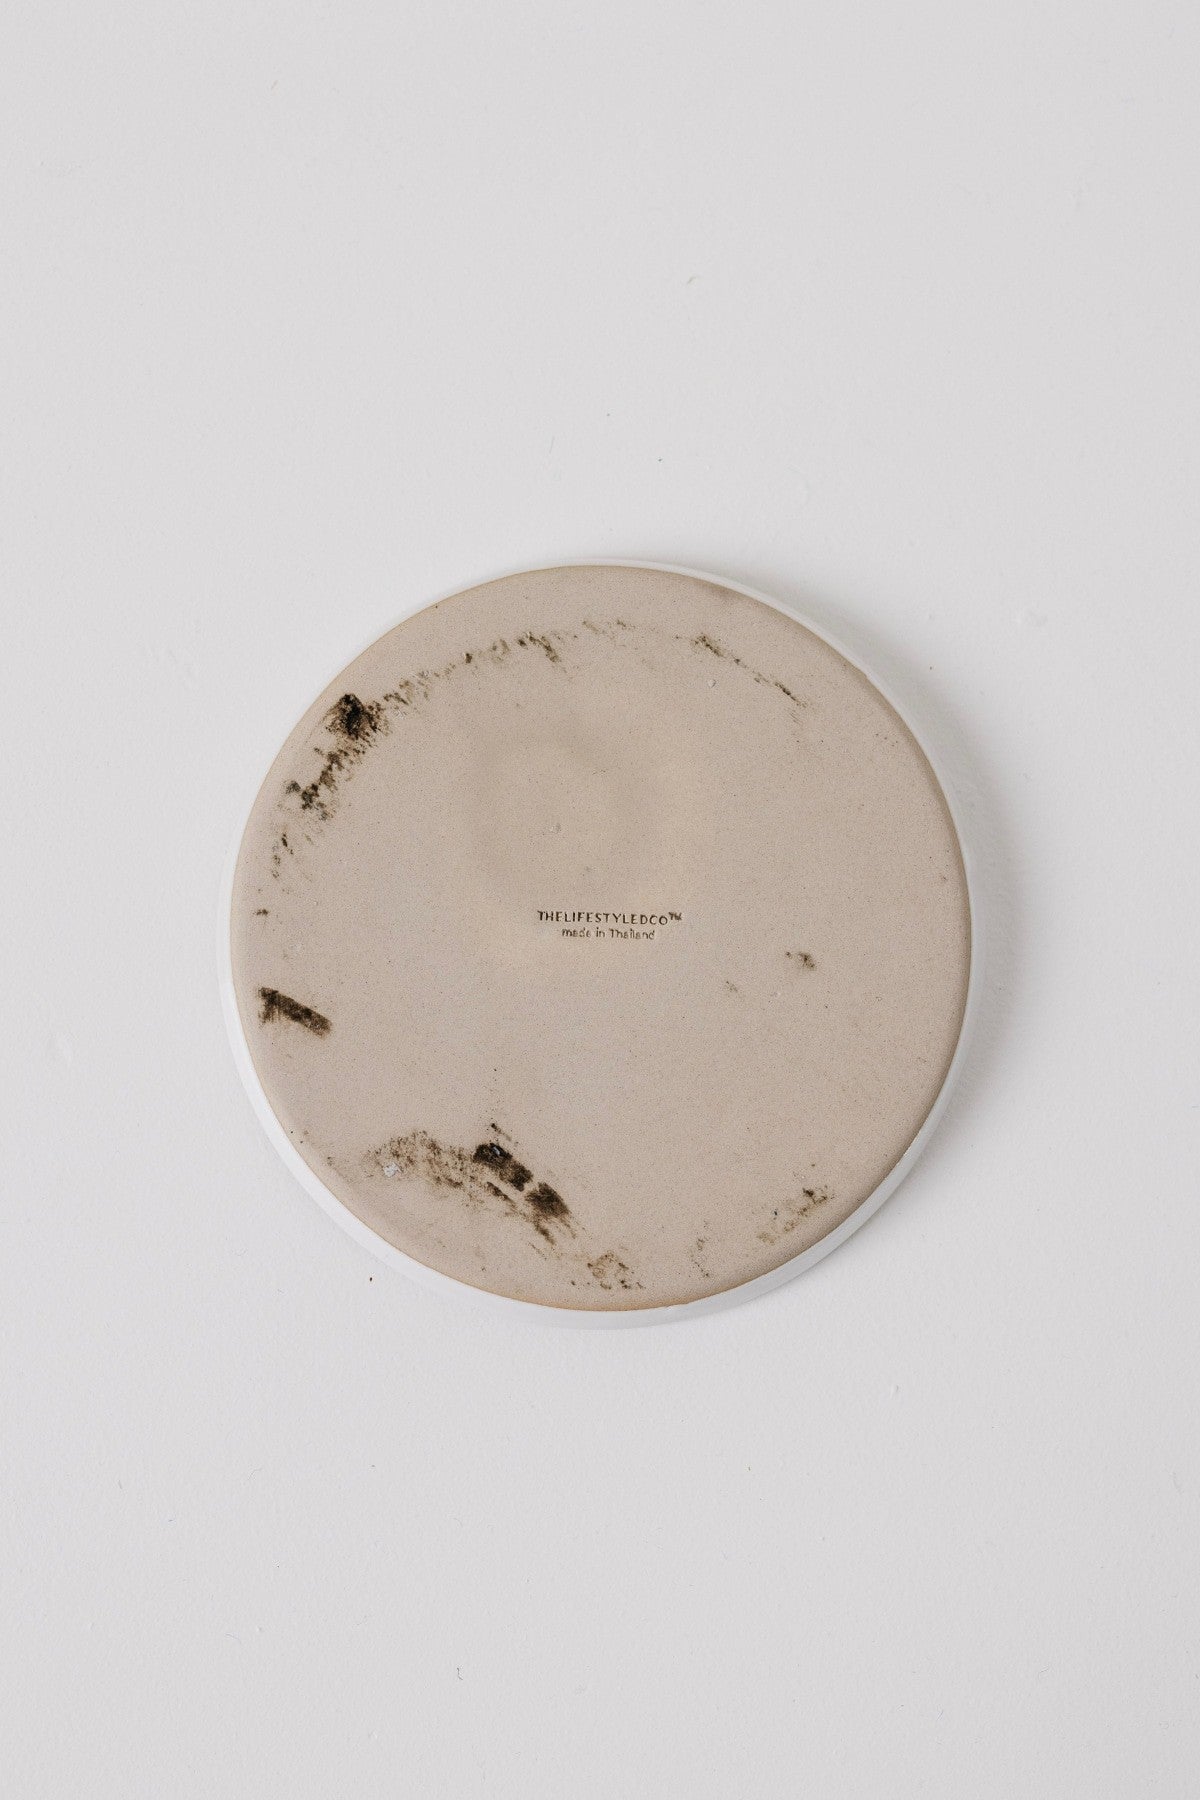 Sonnet Appetizer Plate - Matte White/Glossy White - Set of 6